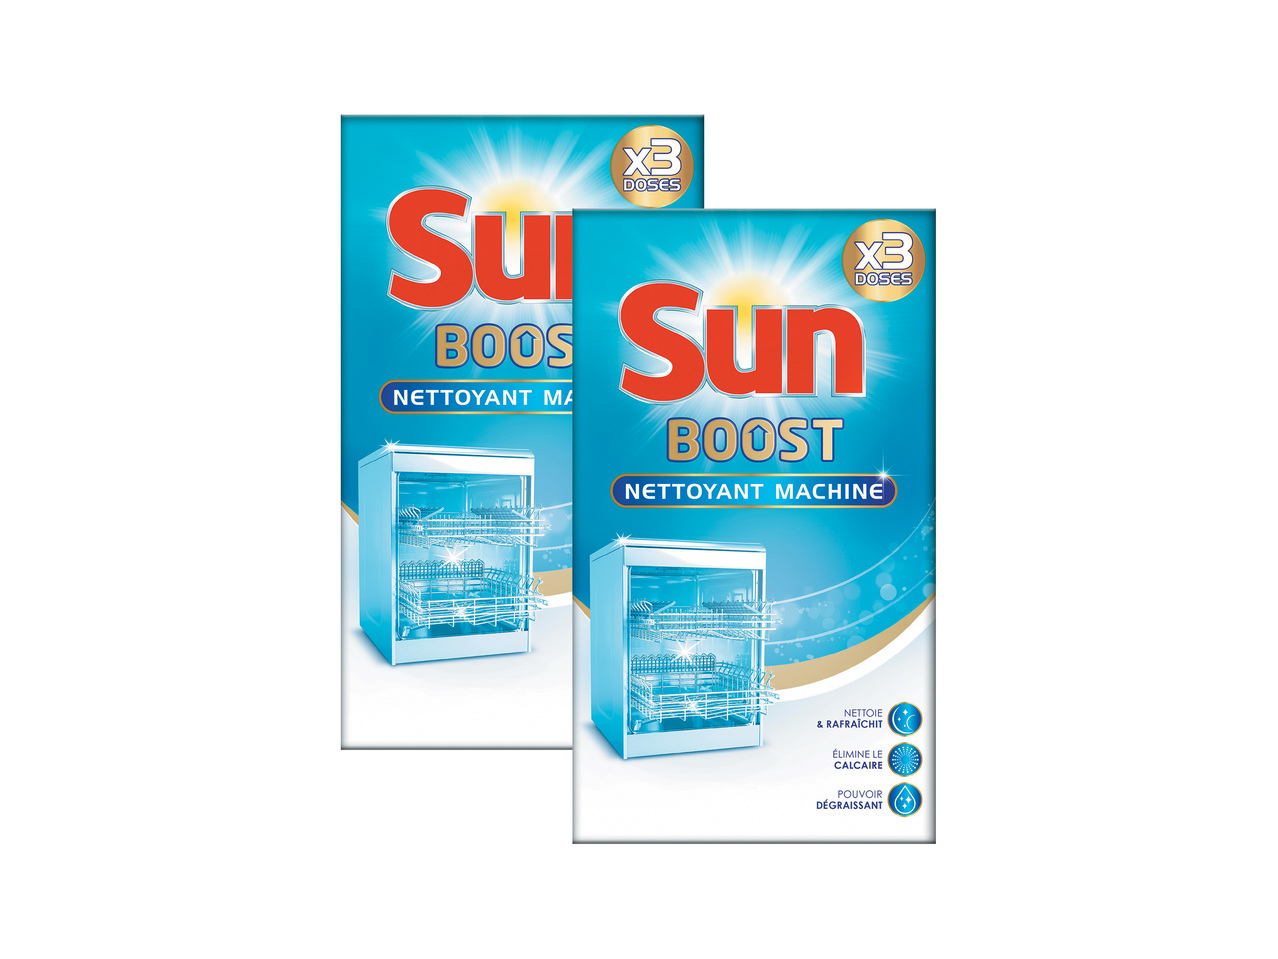 Sun expert nettoyant machine1